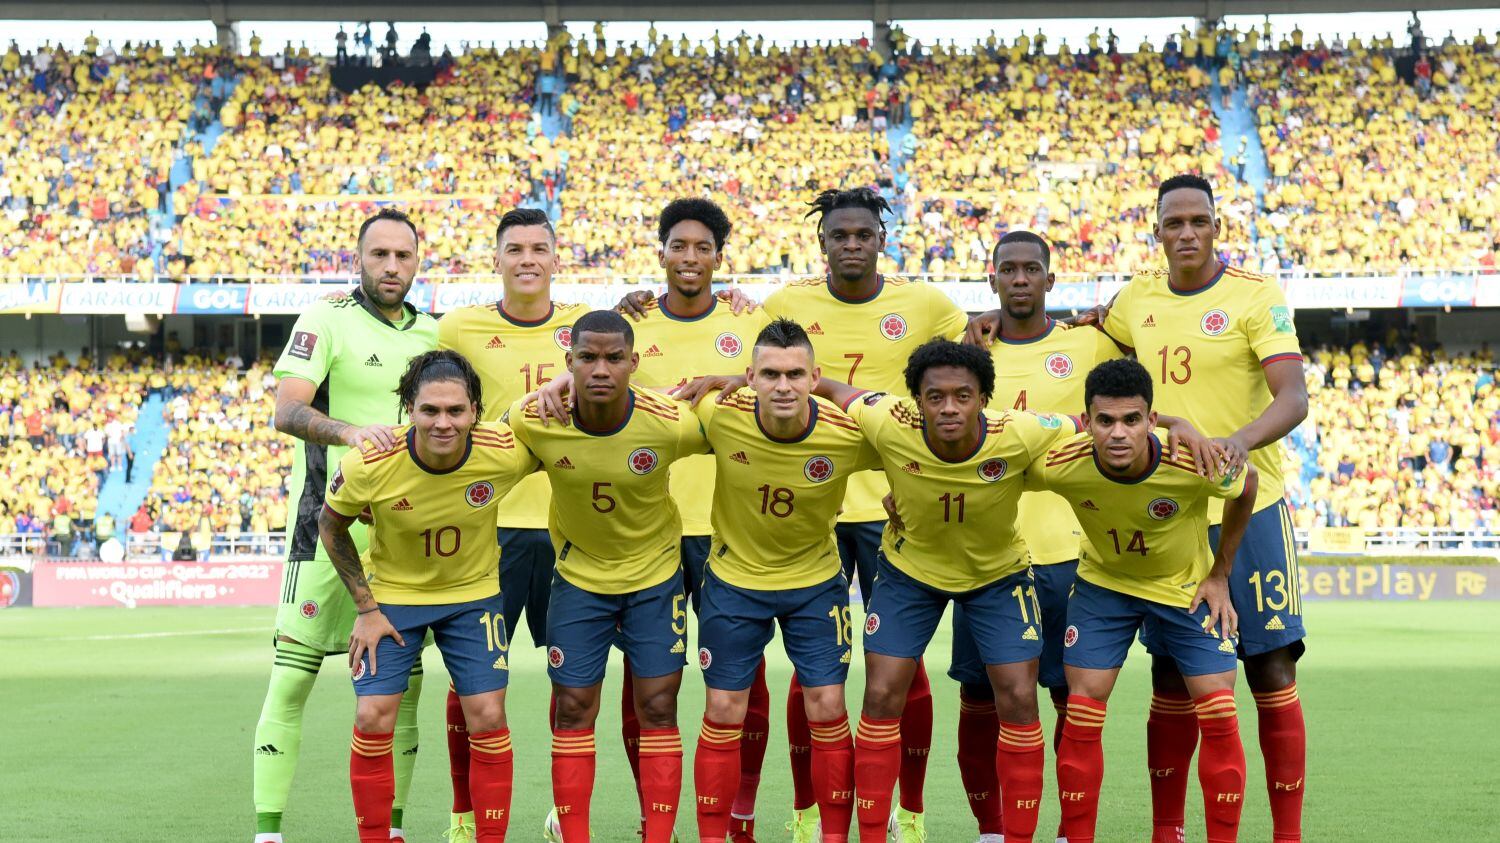 Los posibles rivales de la Selección Colombia en un hipotético repechaje